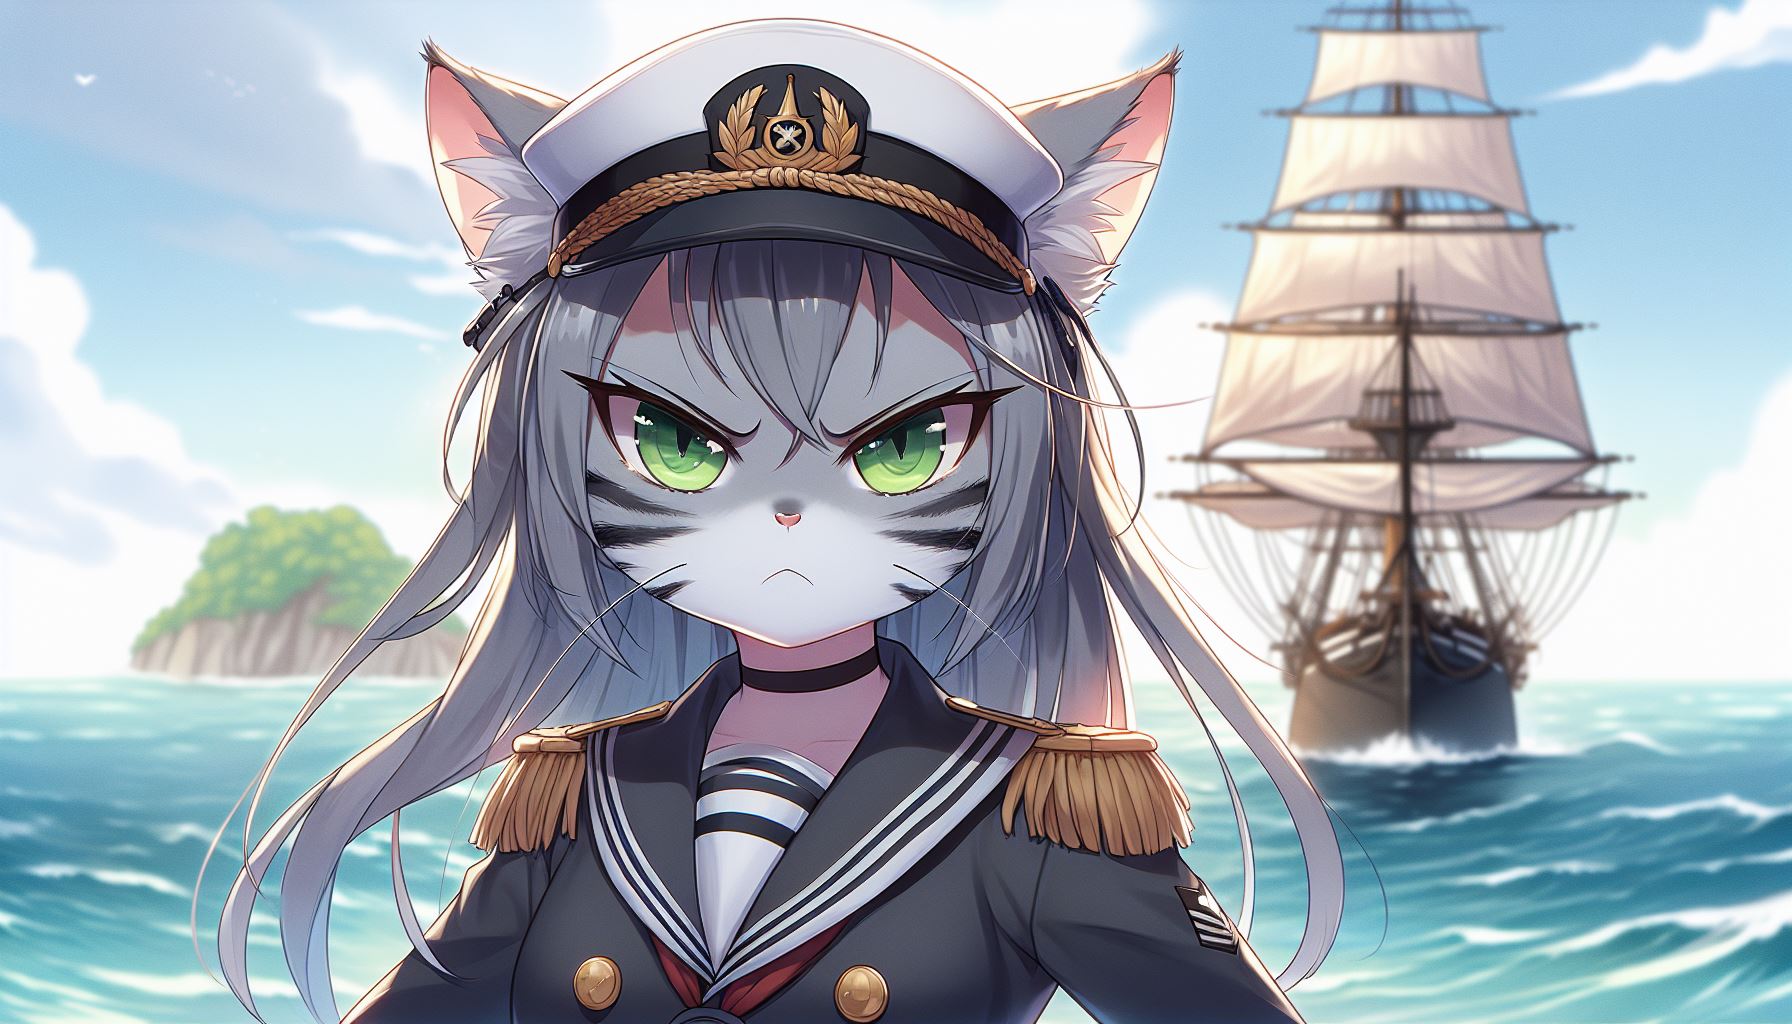 Eine graue weibliche Katze mit schwarzen Streifen, gekleidet in eine Marineuniform und Mütze, steht im Vordergrund. Sie schmollt. Im Hintergrund segelt ein majestätisches Schiff auf dem offenen Meer nahe einer malerischen Insel unter einem teilweise bewölkten Himmel.